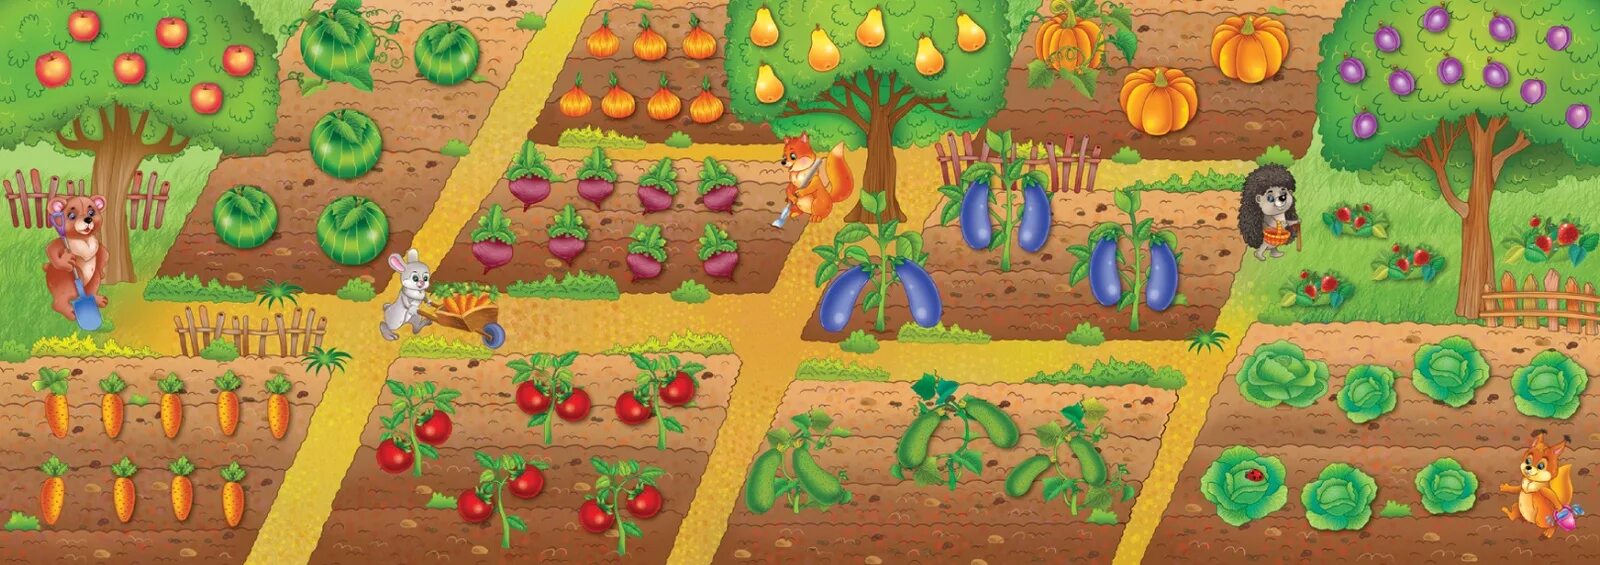 Vegetable игра. Игра-панорамка овощи и фрукты. Грядка с овощами для детей. Игра огород для детей. Картина огород с овощами для детей.